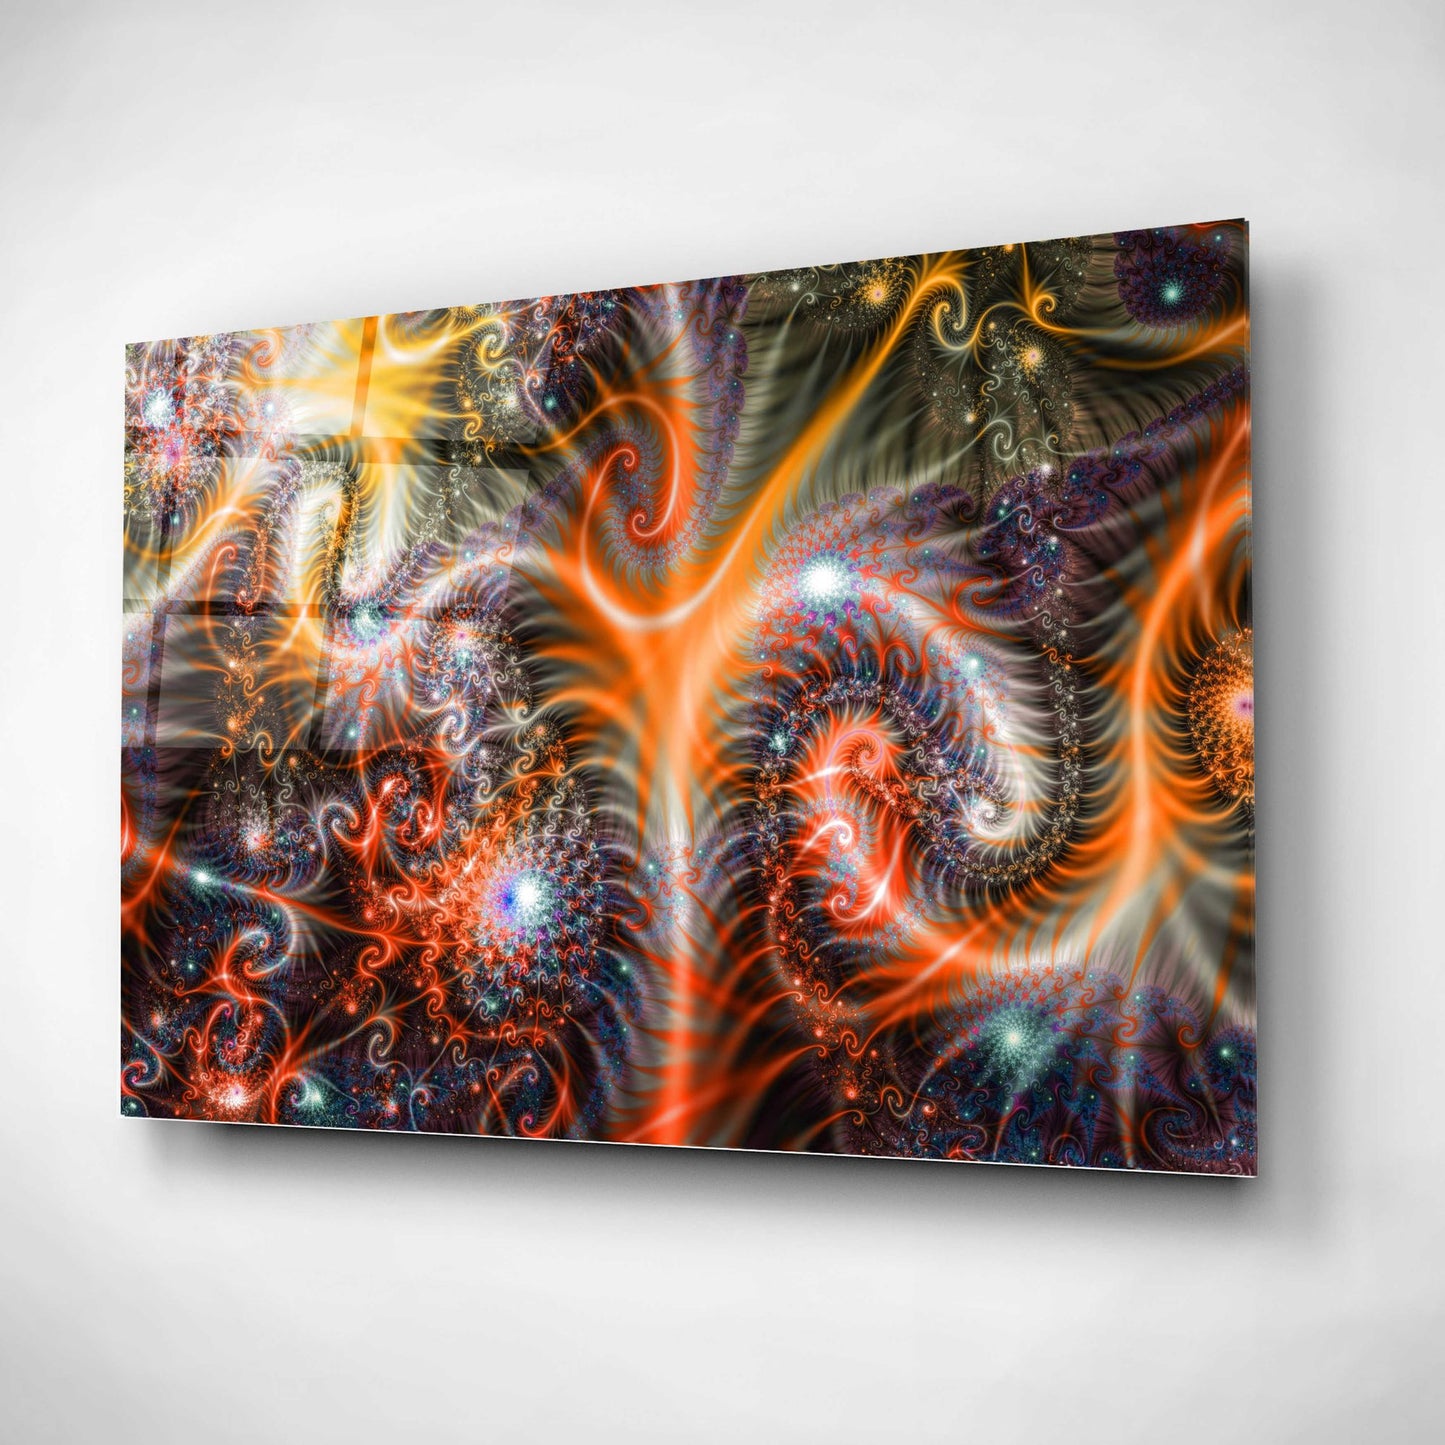 Epic Art 'Amoeba' Acrylic Glass Wall Art,16x24